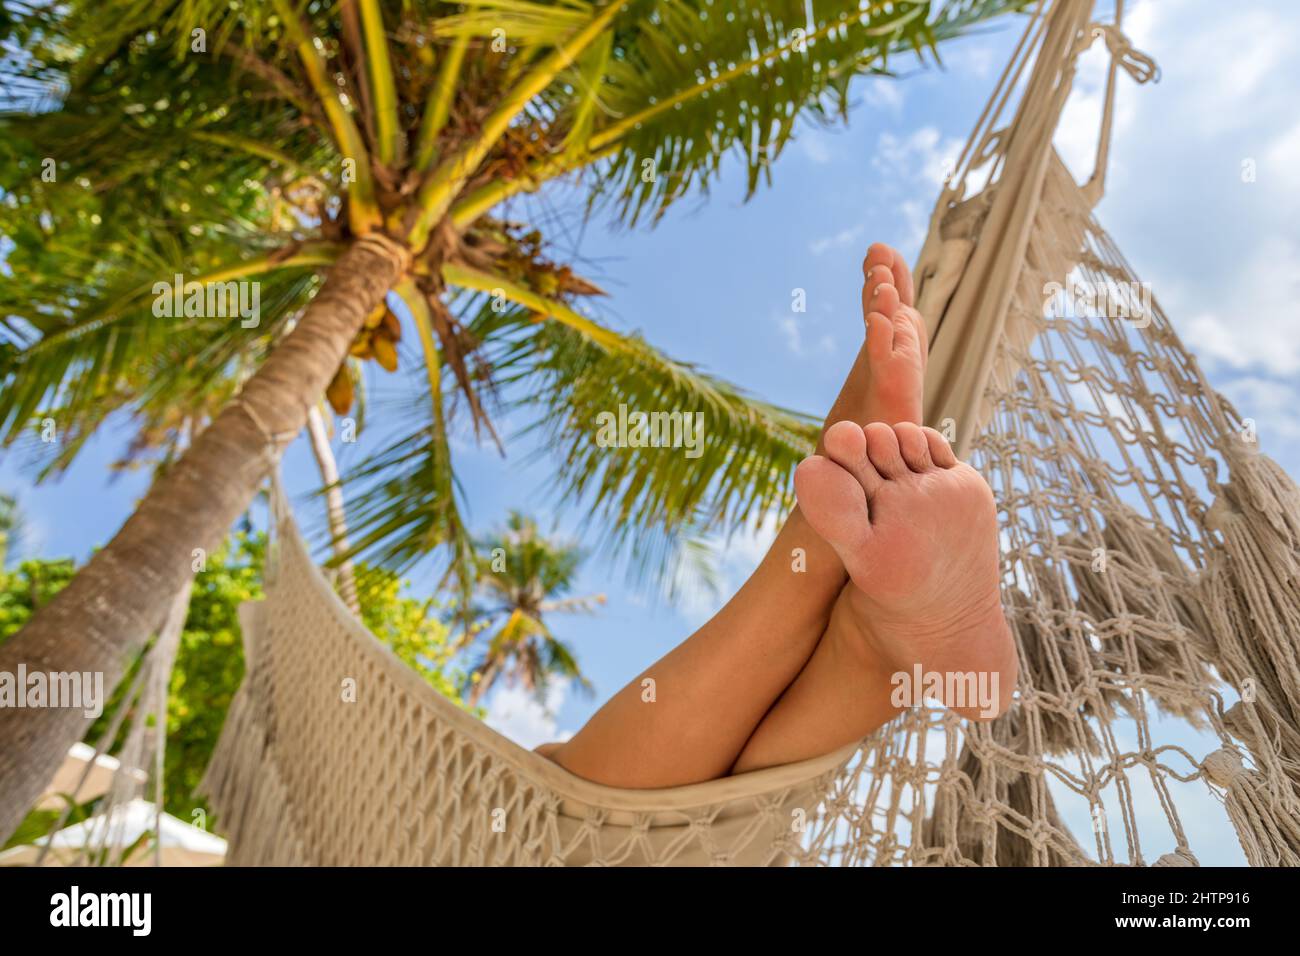 Rilassante vacanza in spiaggia con i piedi della donna in amaca tra palme da cocco. Esotica isola tropicale. Giornata calda e soleggiata con cielo blu. Foto Stock